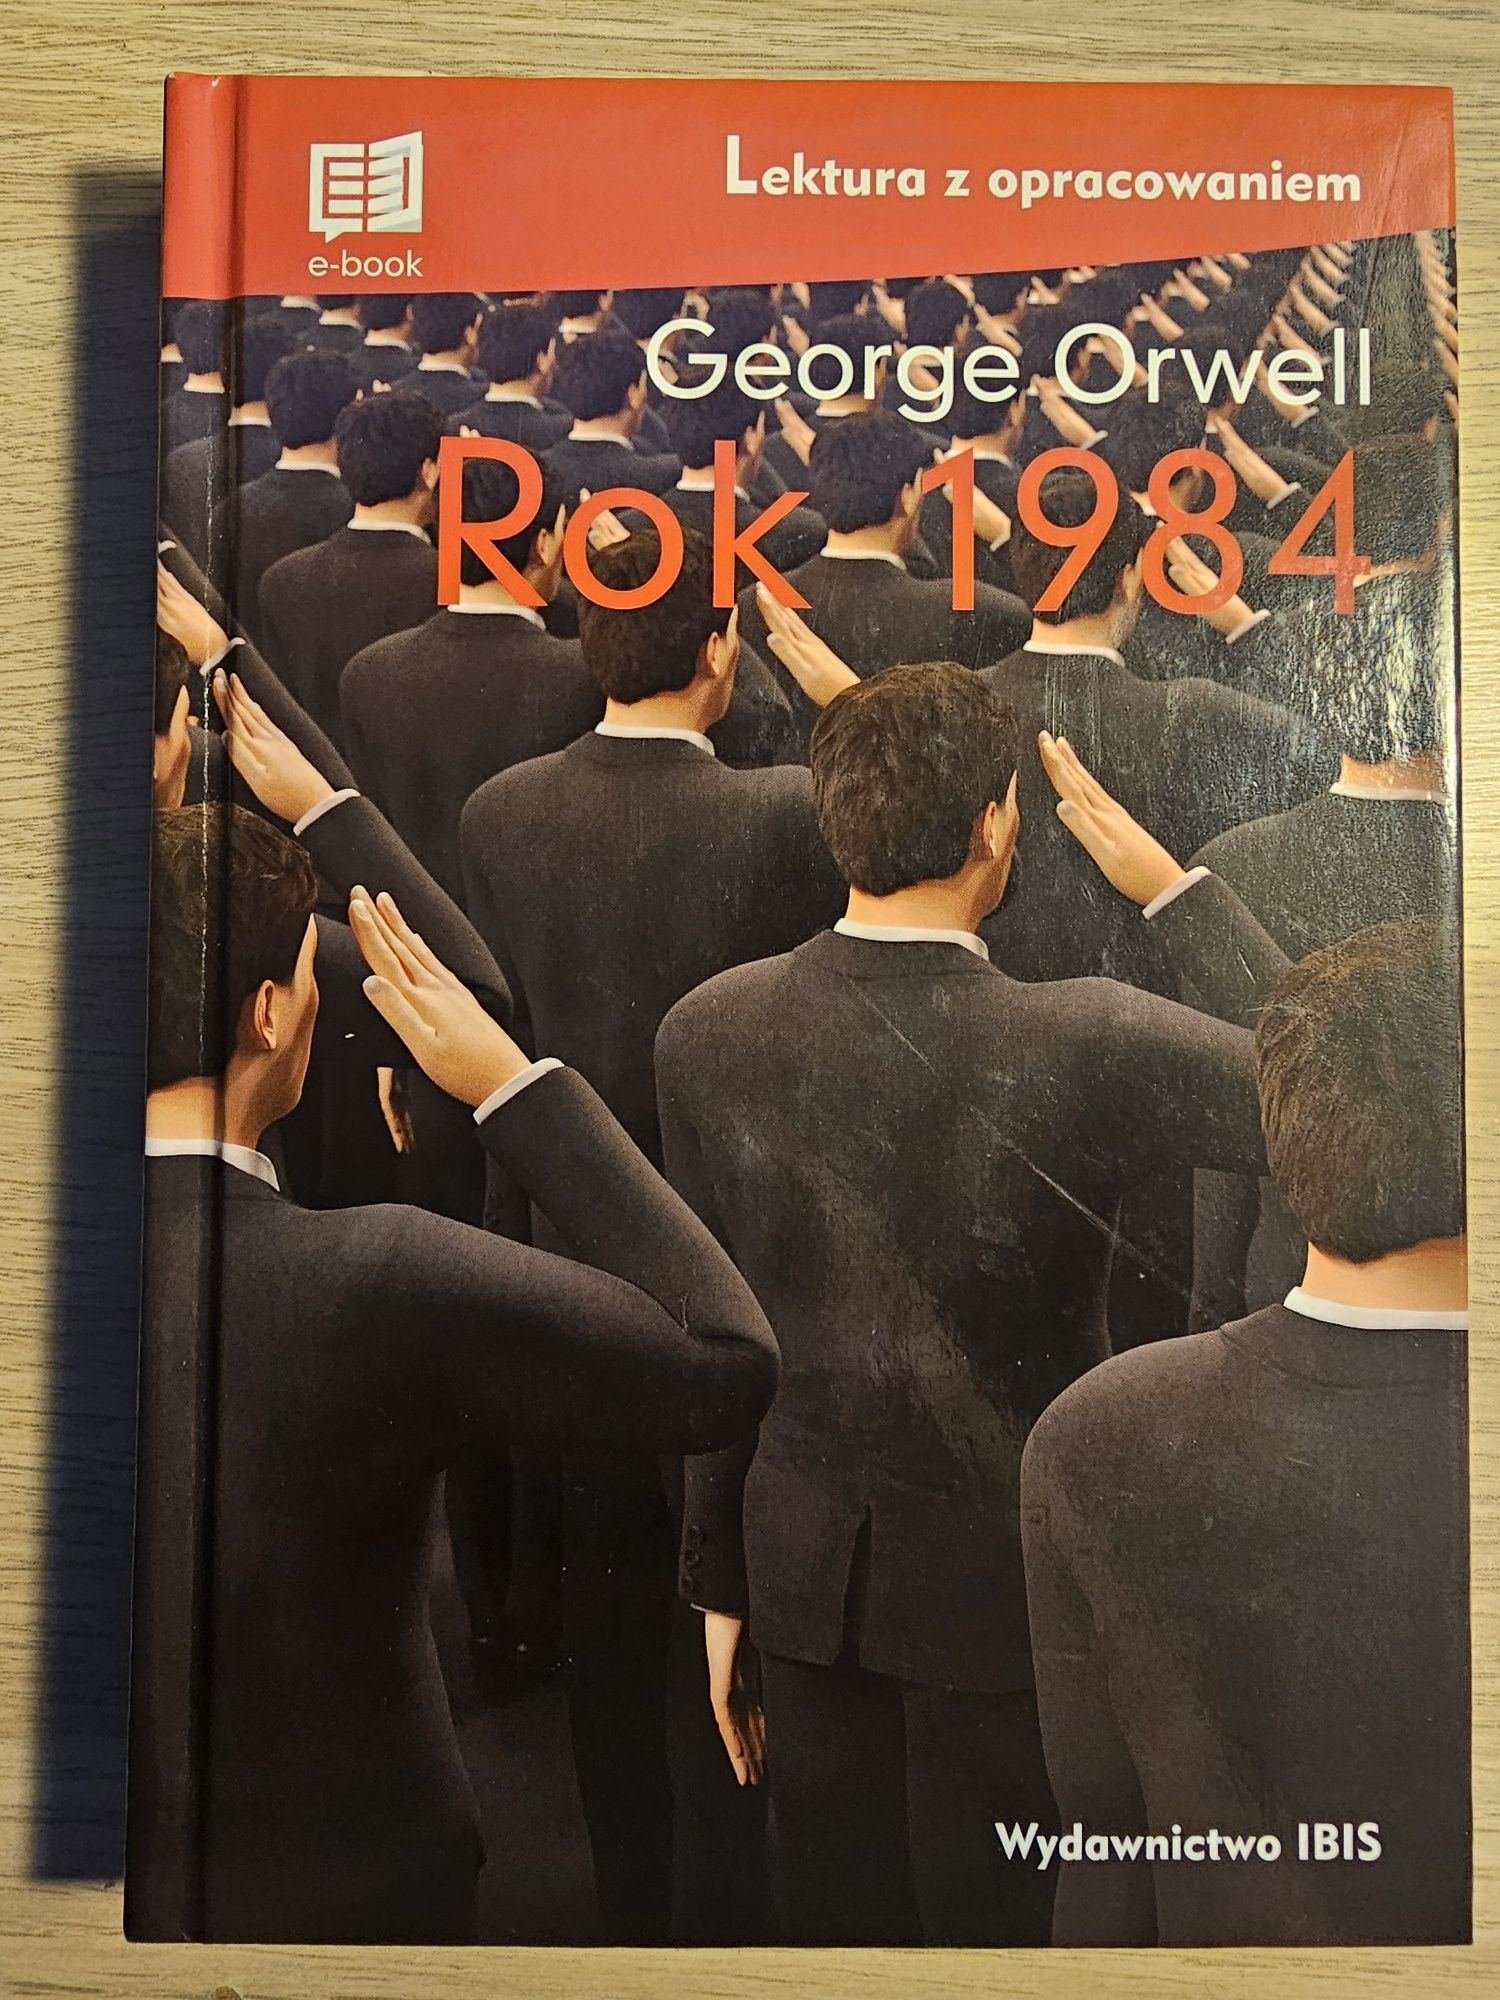 Książka George Orwell "Rok 1984"